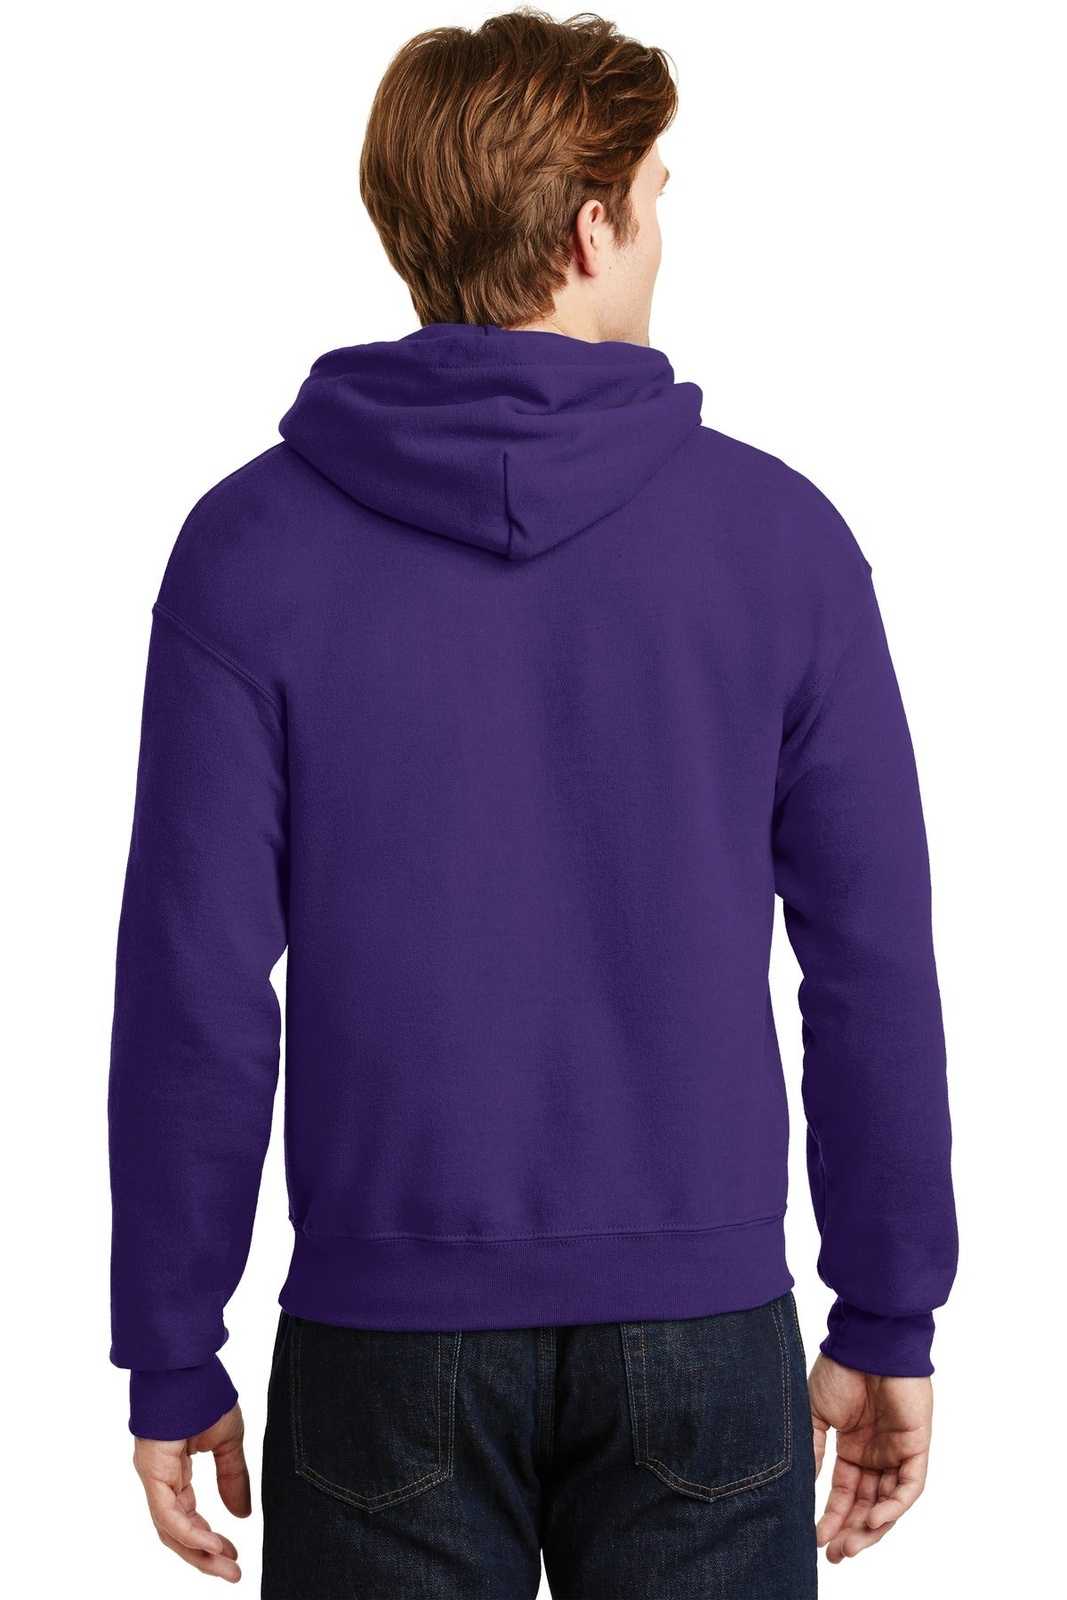 Gildan 18500 Heavy Blend Hooded Sweatshirt - Purple - HIT a Double